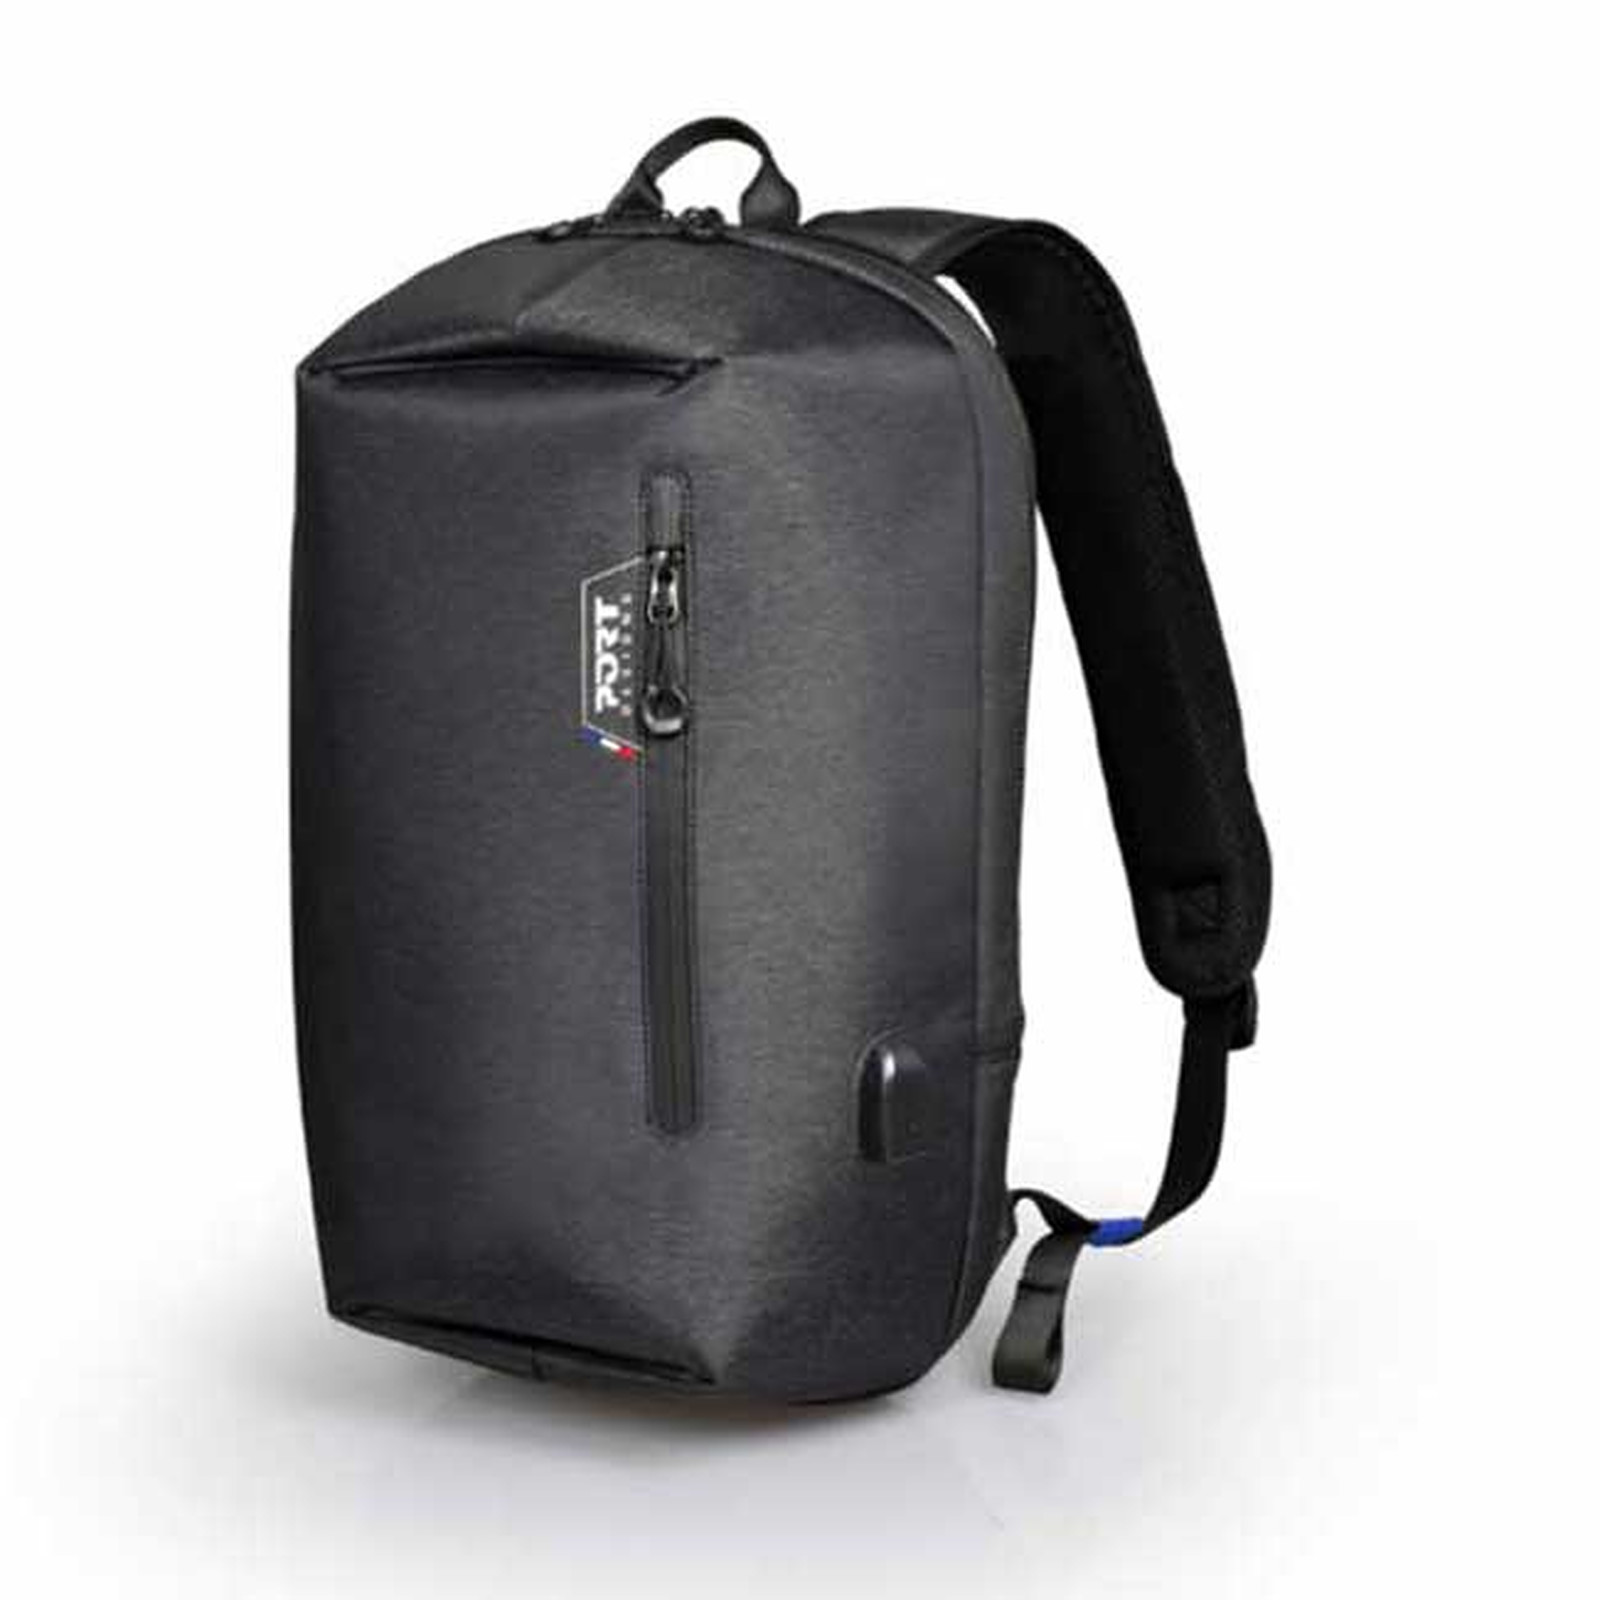 PORT Designs San Franscisco Backpack 15.6" - Sac, sacoche, housse PORT Designs